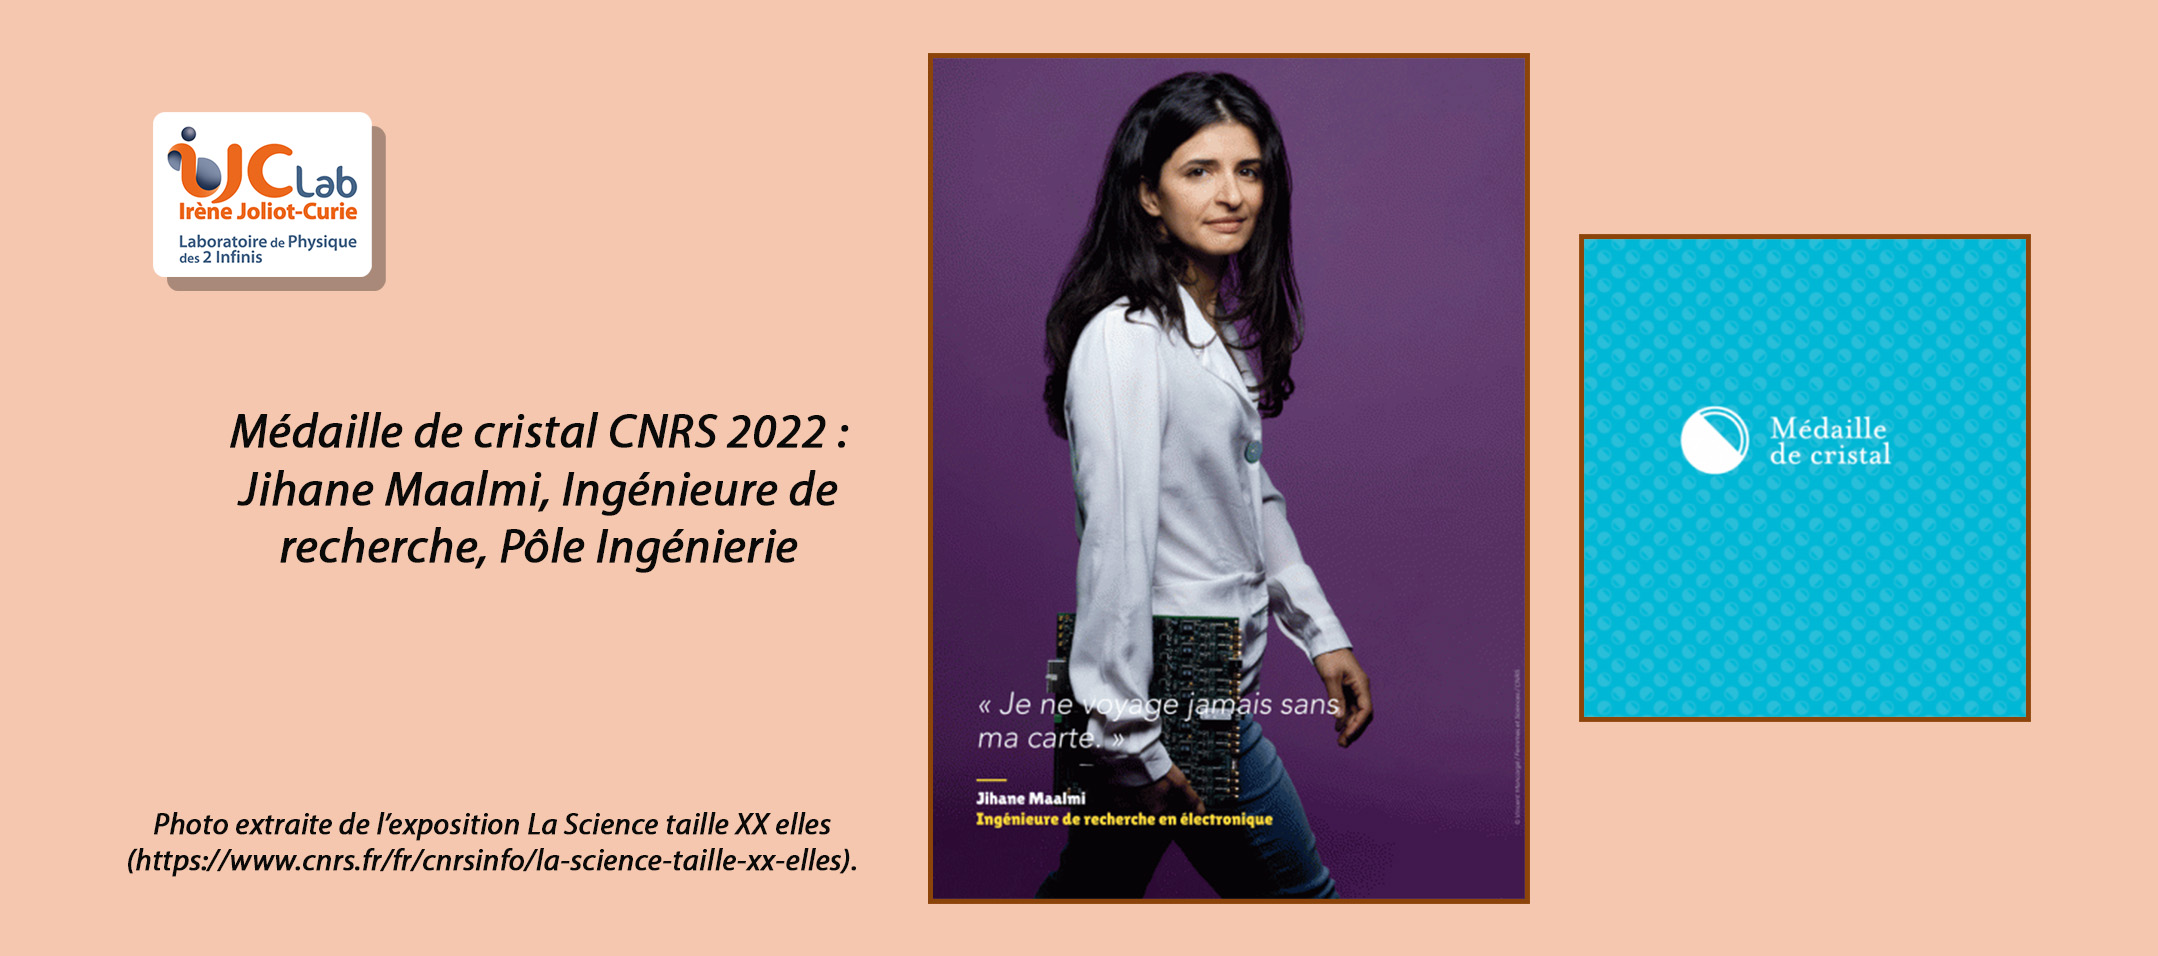 Jihane Maalmi récompensée par la médaille de cristal CNRS 2022